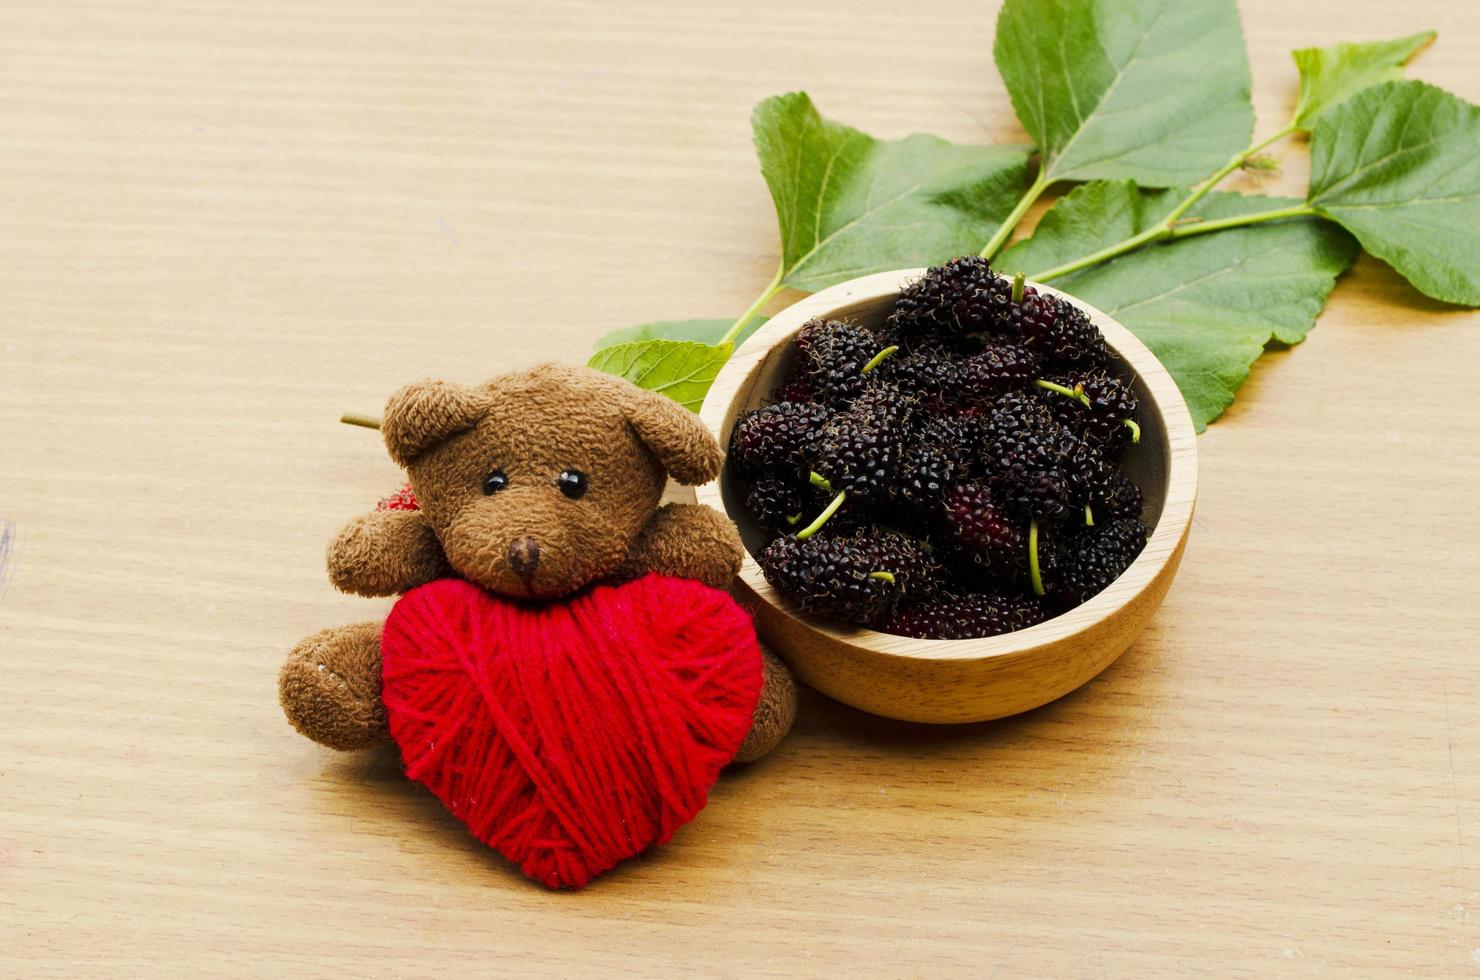 närbild av teddy dol med rött hjärta och mullbärsfrukter foto